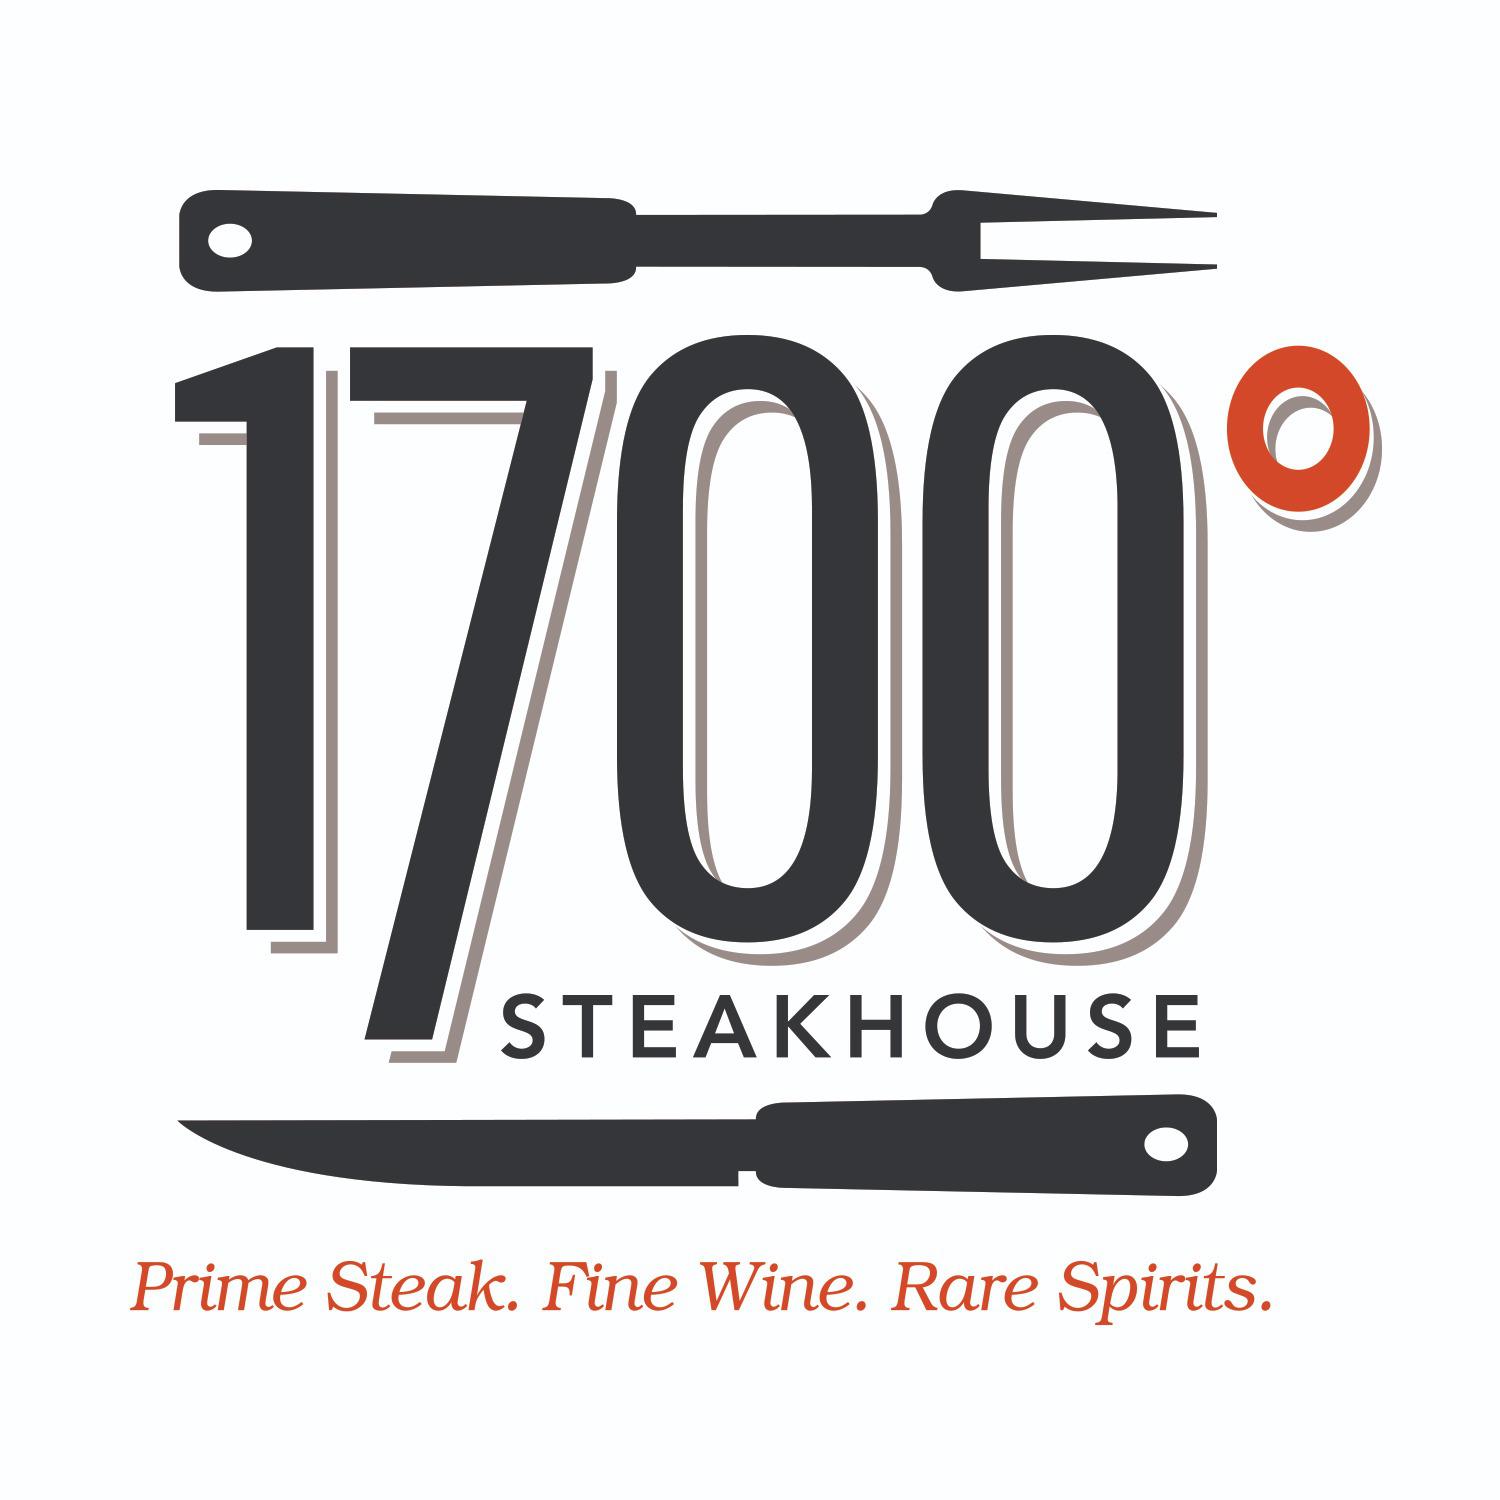 1700 Degrees Steakhouse